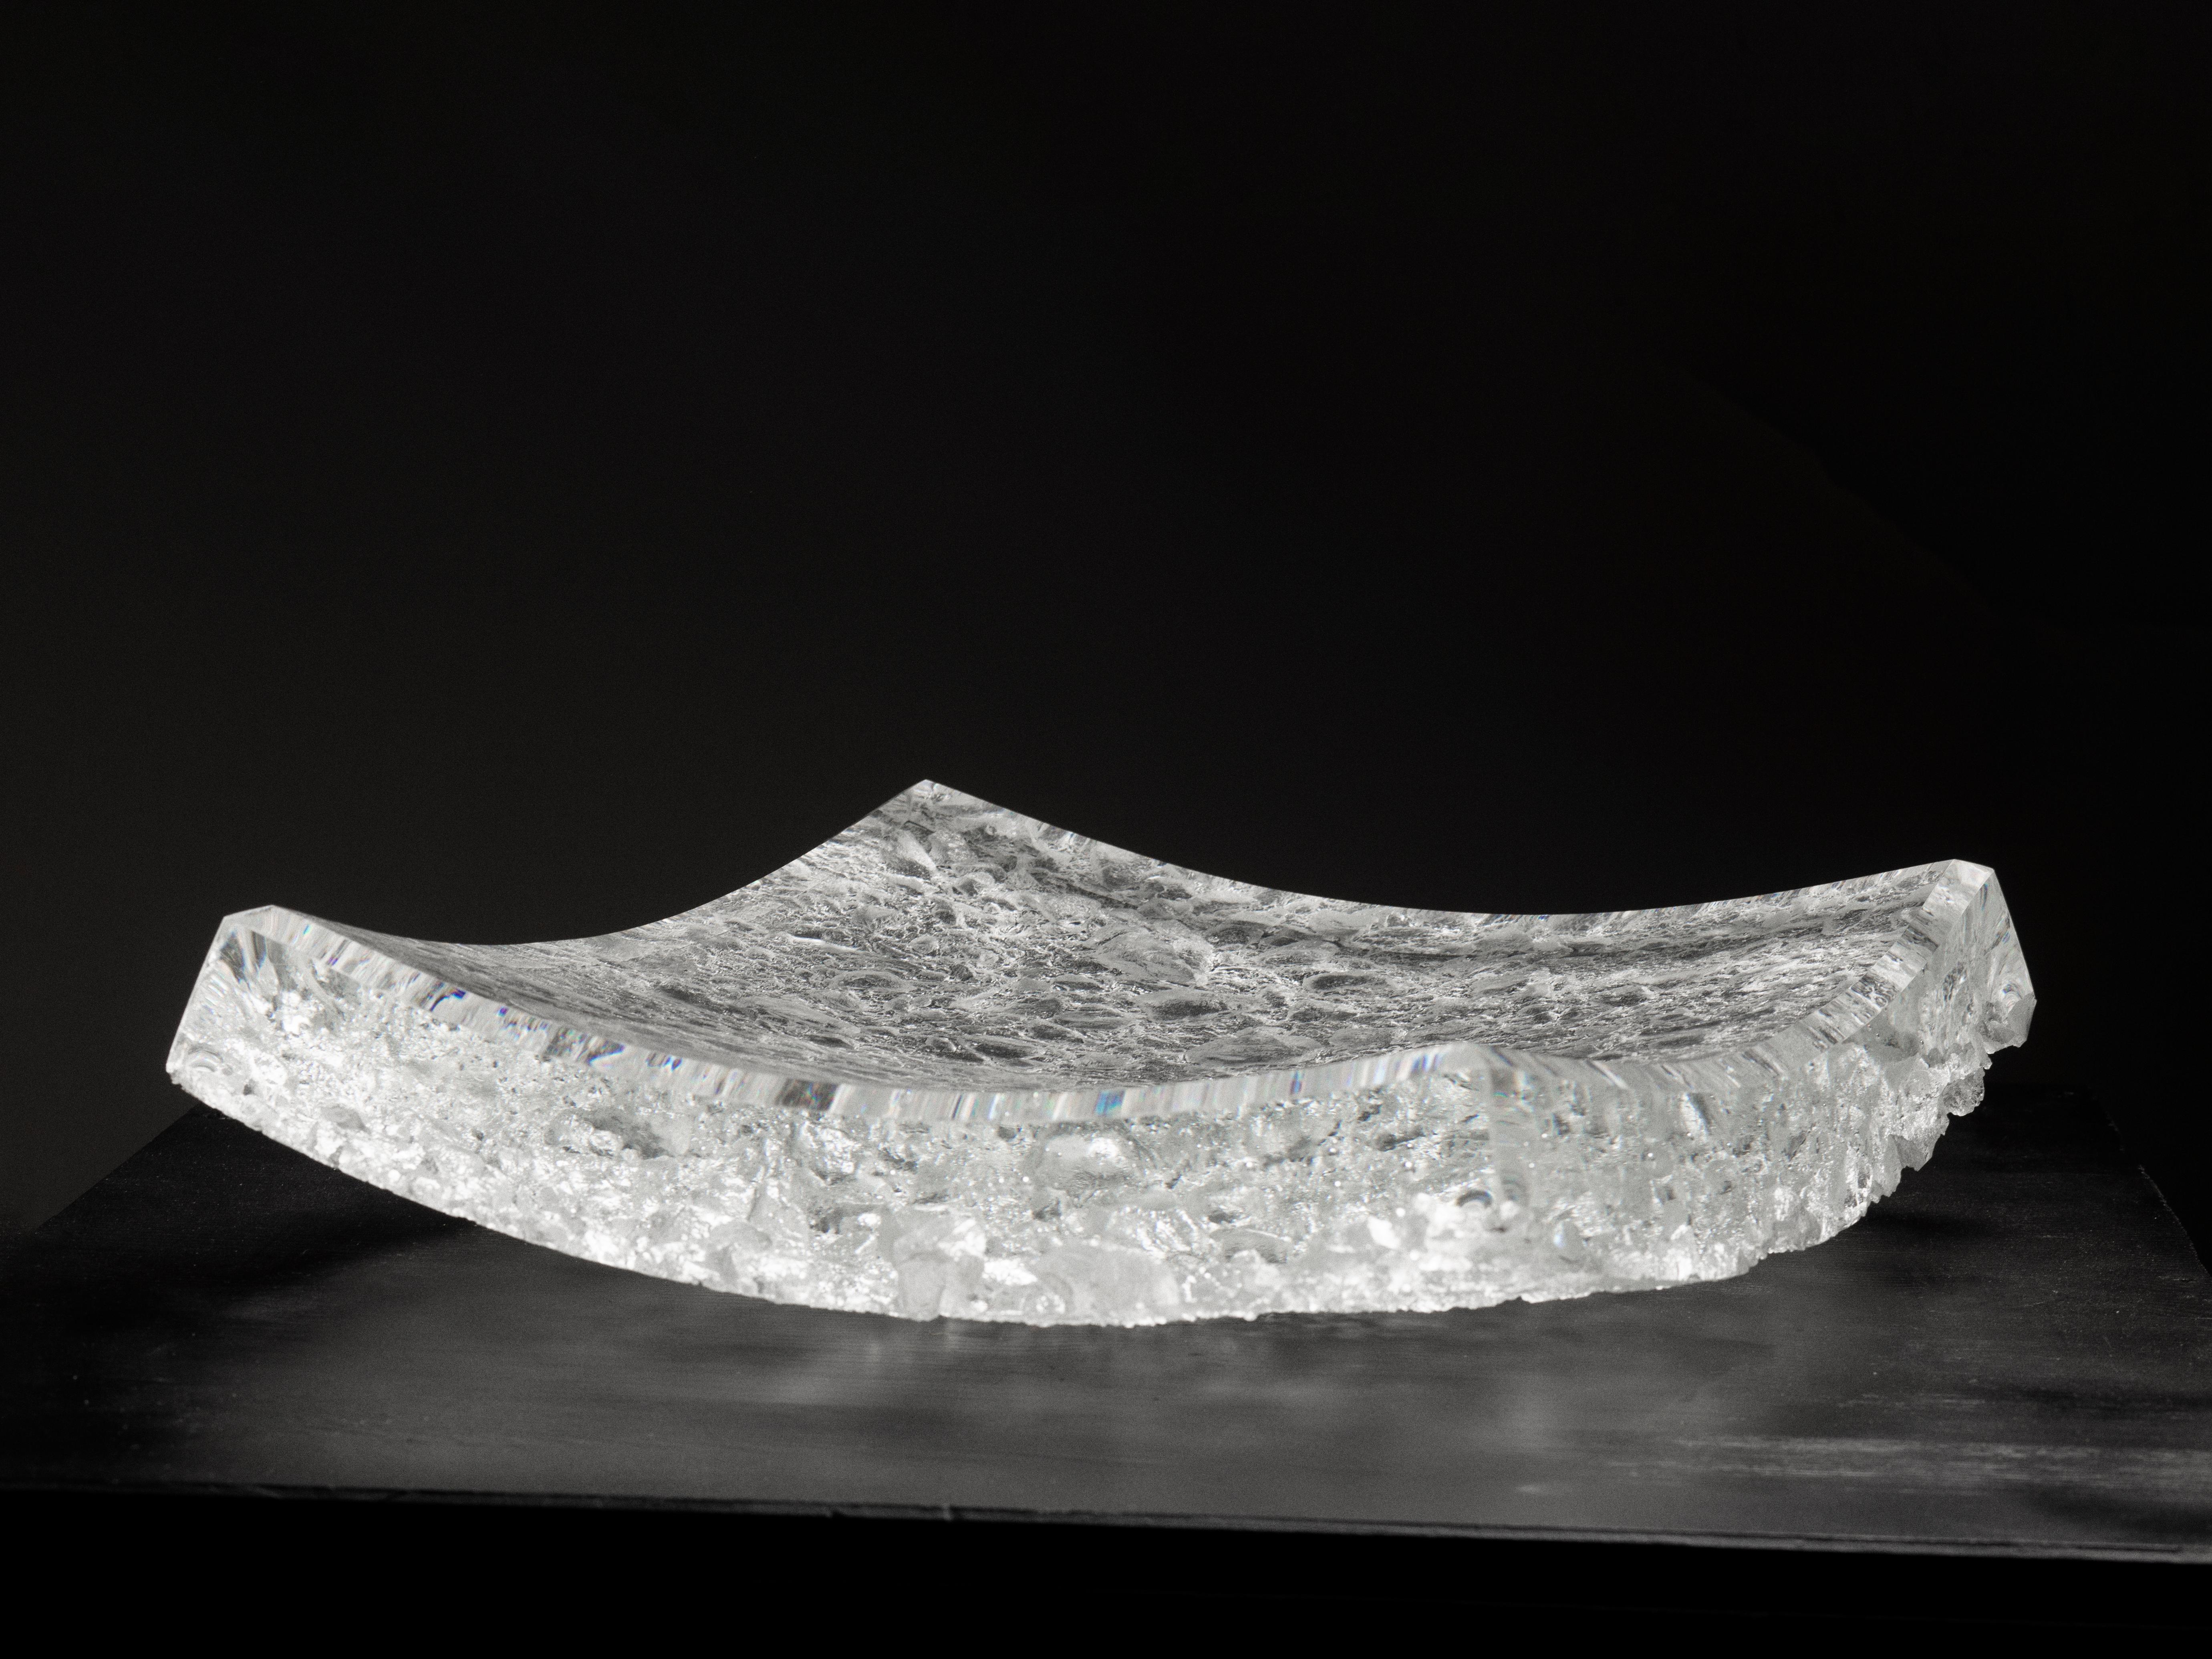 Quadratischer Yugen-Teller von Matthieu Gicquel
Abmessungen: T 39 x B 39 x H 5 cm.
MATERIALIEN: Optisches Glas.
Gewicht: 19 kg.

Jedes Stück ist nummeriert. Bitte kontaktieren Sie uns.

Lob für den Augenblick
Das Licht scheint durch das Glas. Die